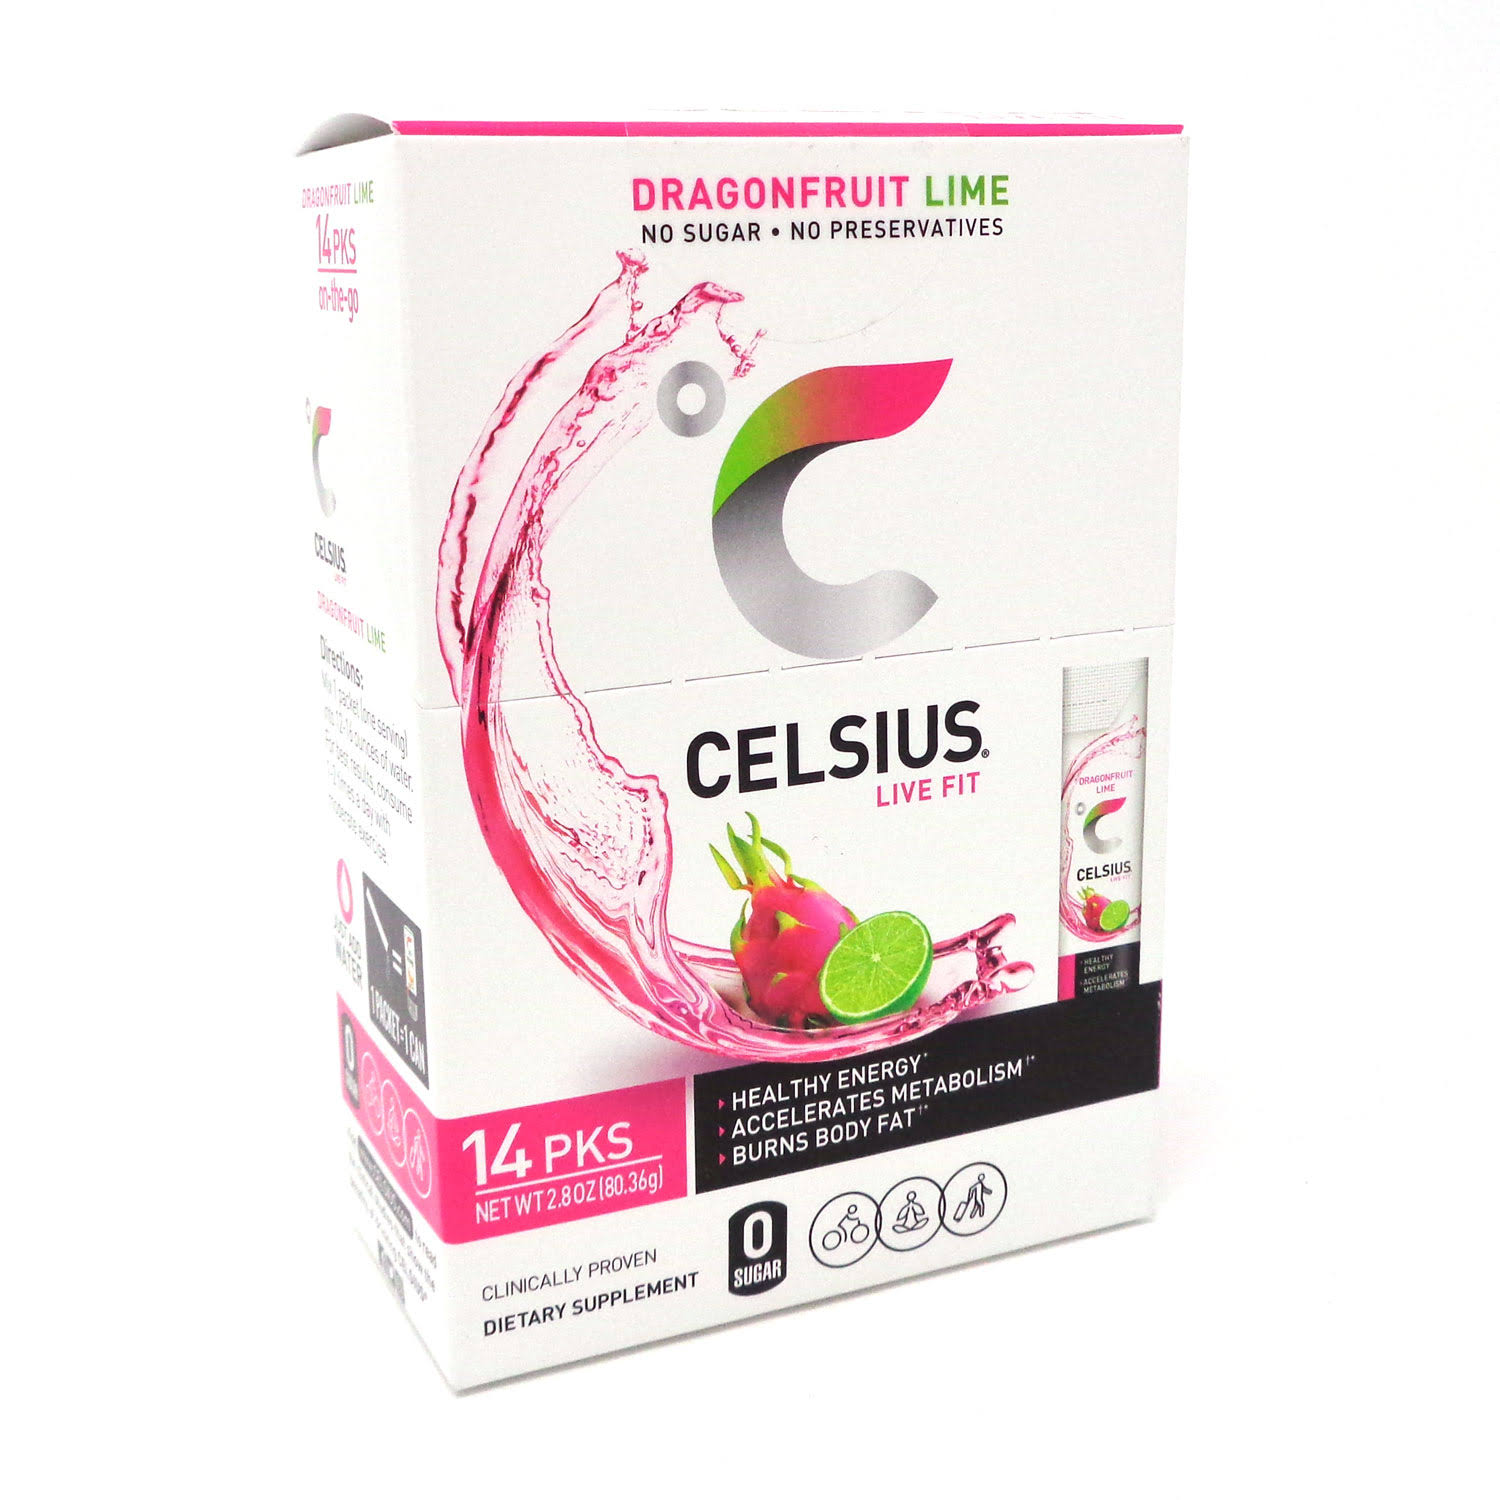 Celsius Live Fit Dragon Fruit Lime Powder - 14 Servings